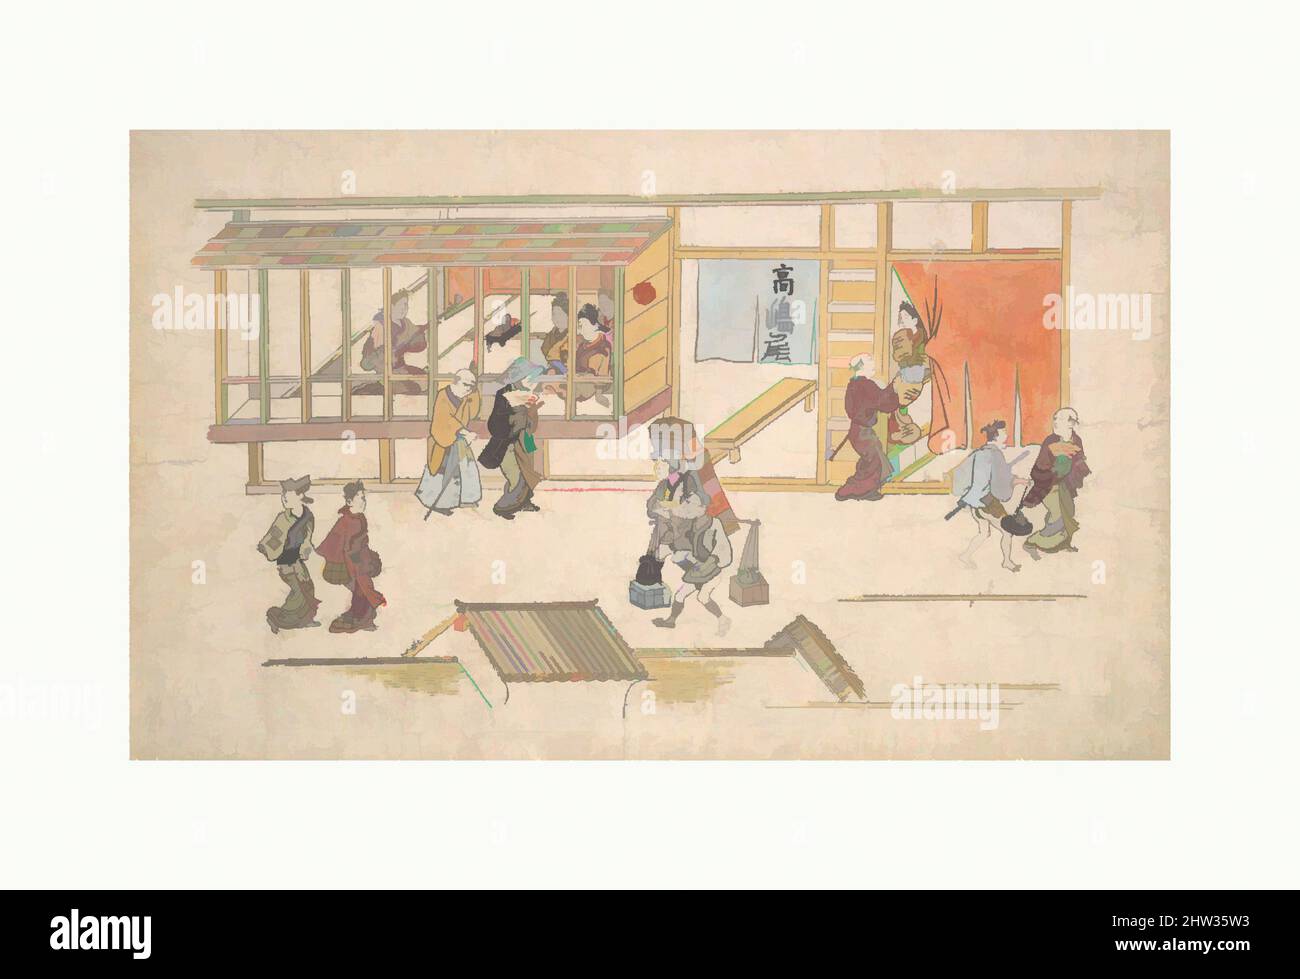 Art inspiré par la scène dans le Yoshiwara, période Edo (1615–1868), env. 1680, Japon, imprimé polychrome sur bois ; encre et couleur sur papier, 11 1/4 x 17 31/32 po. (28,6 x 45,7 cm), estampes, Hishikawa Moronobu (japonais, mort en 1694), les courtesans sont vus de la rue à travers un bois barré, les œuvres classiques modernisées par Artotop avec une touche de modernité. Formes, couleur et valeur, impact visuel accrocheur sur l'art émotions par la liberté d'œuvres d'art d'une manière contemporaine. Un message intemporel qui cherche une nouvelle direction créative. Artistes qui se tournent vers le support numérique et créent le NFT Artotop Banque D'Images